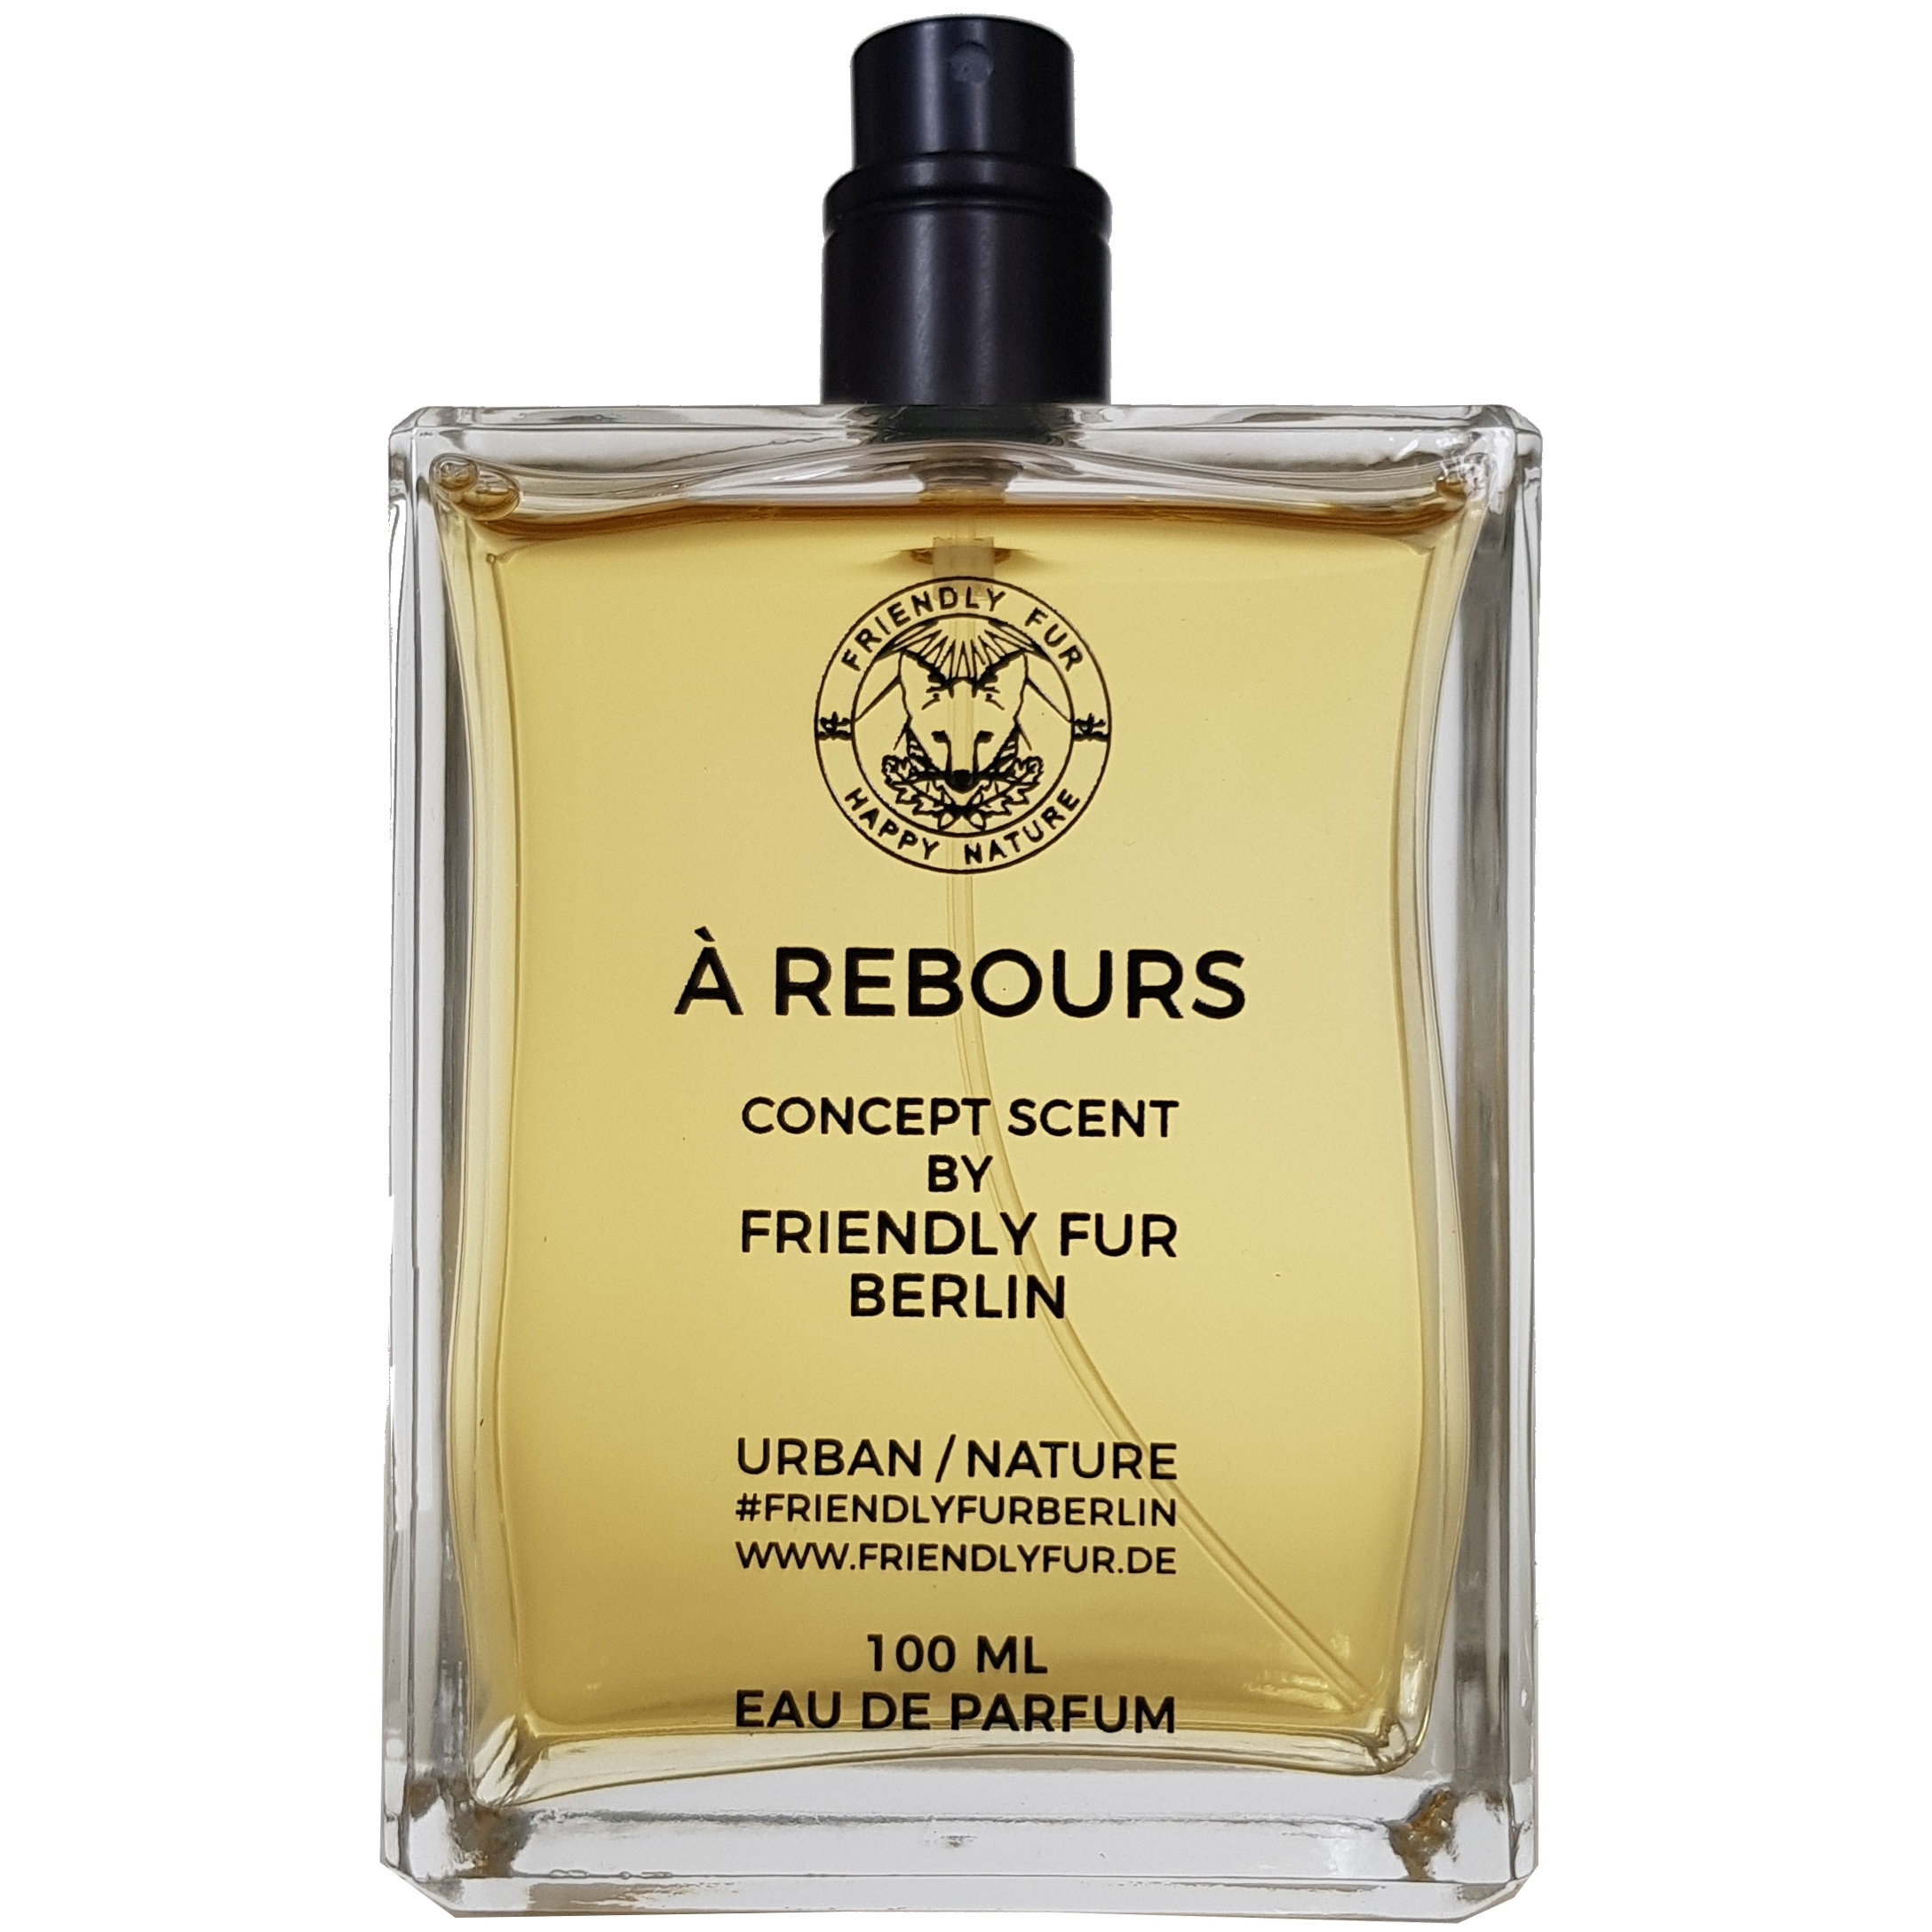 A Rebours Friendly Fur шипрово-цветочный аромат для женщин. Это новое издание прошлого выпуска в виде 